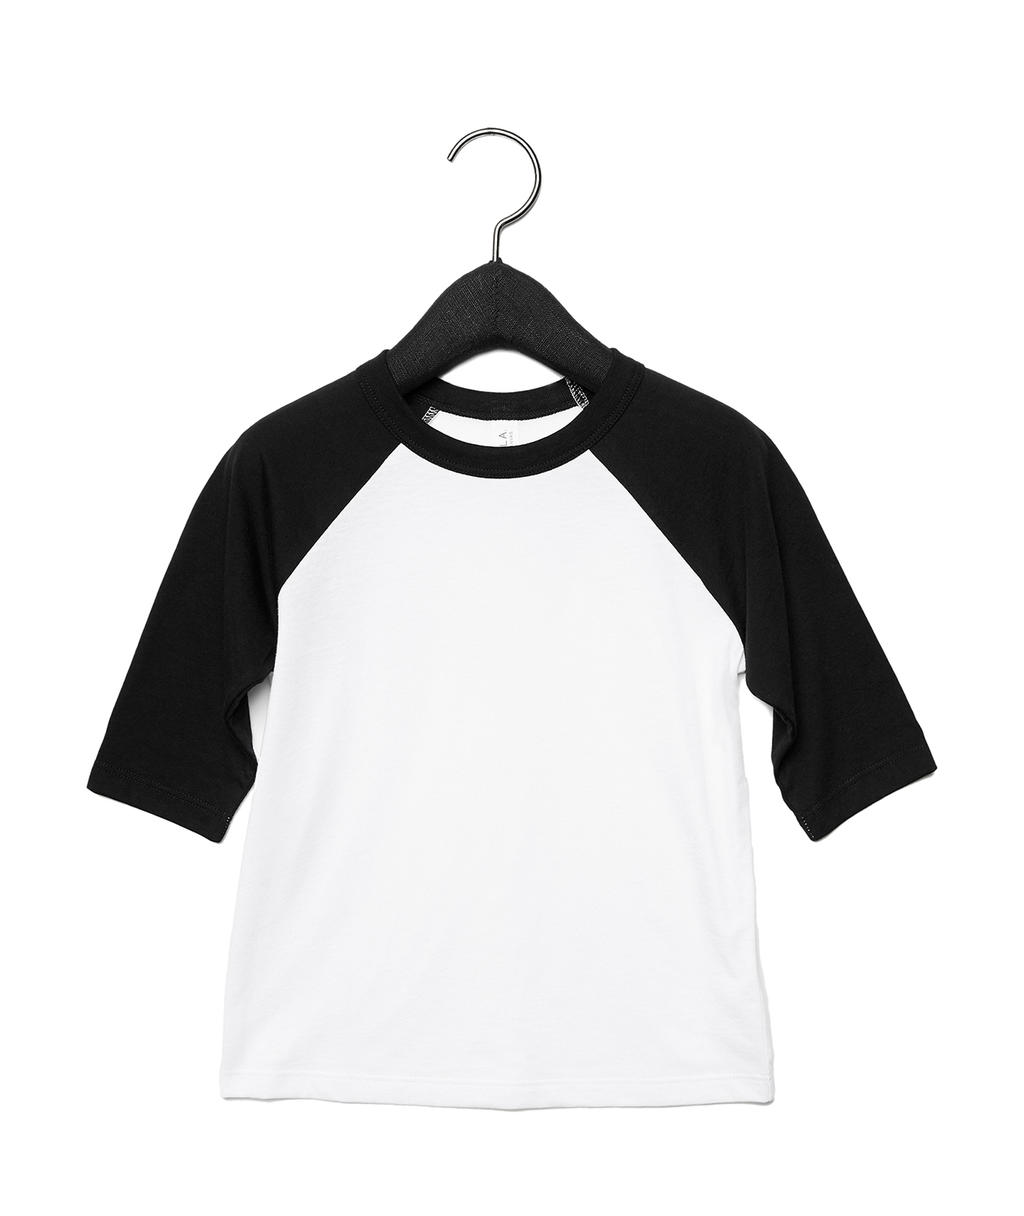 Detské baseballové tričko s ¾ rukávmi - white/black